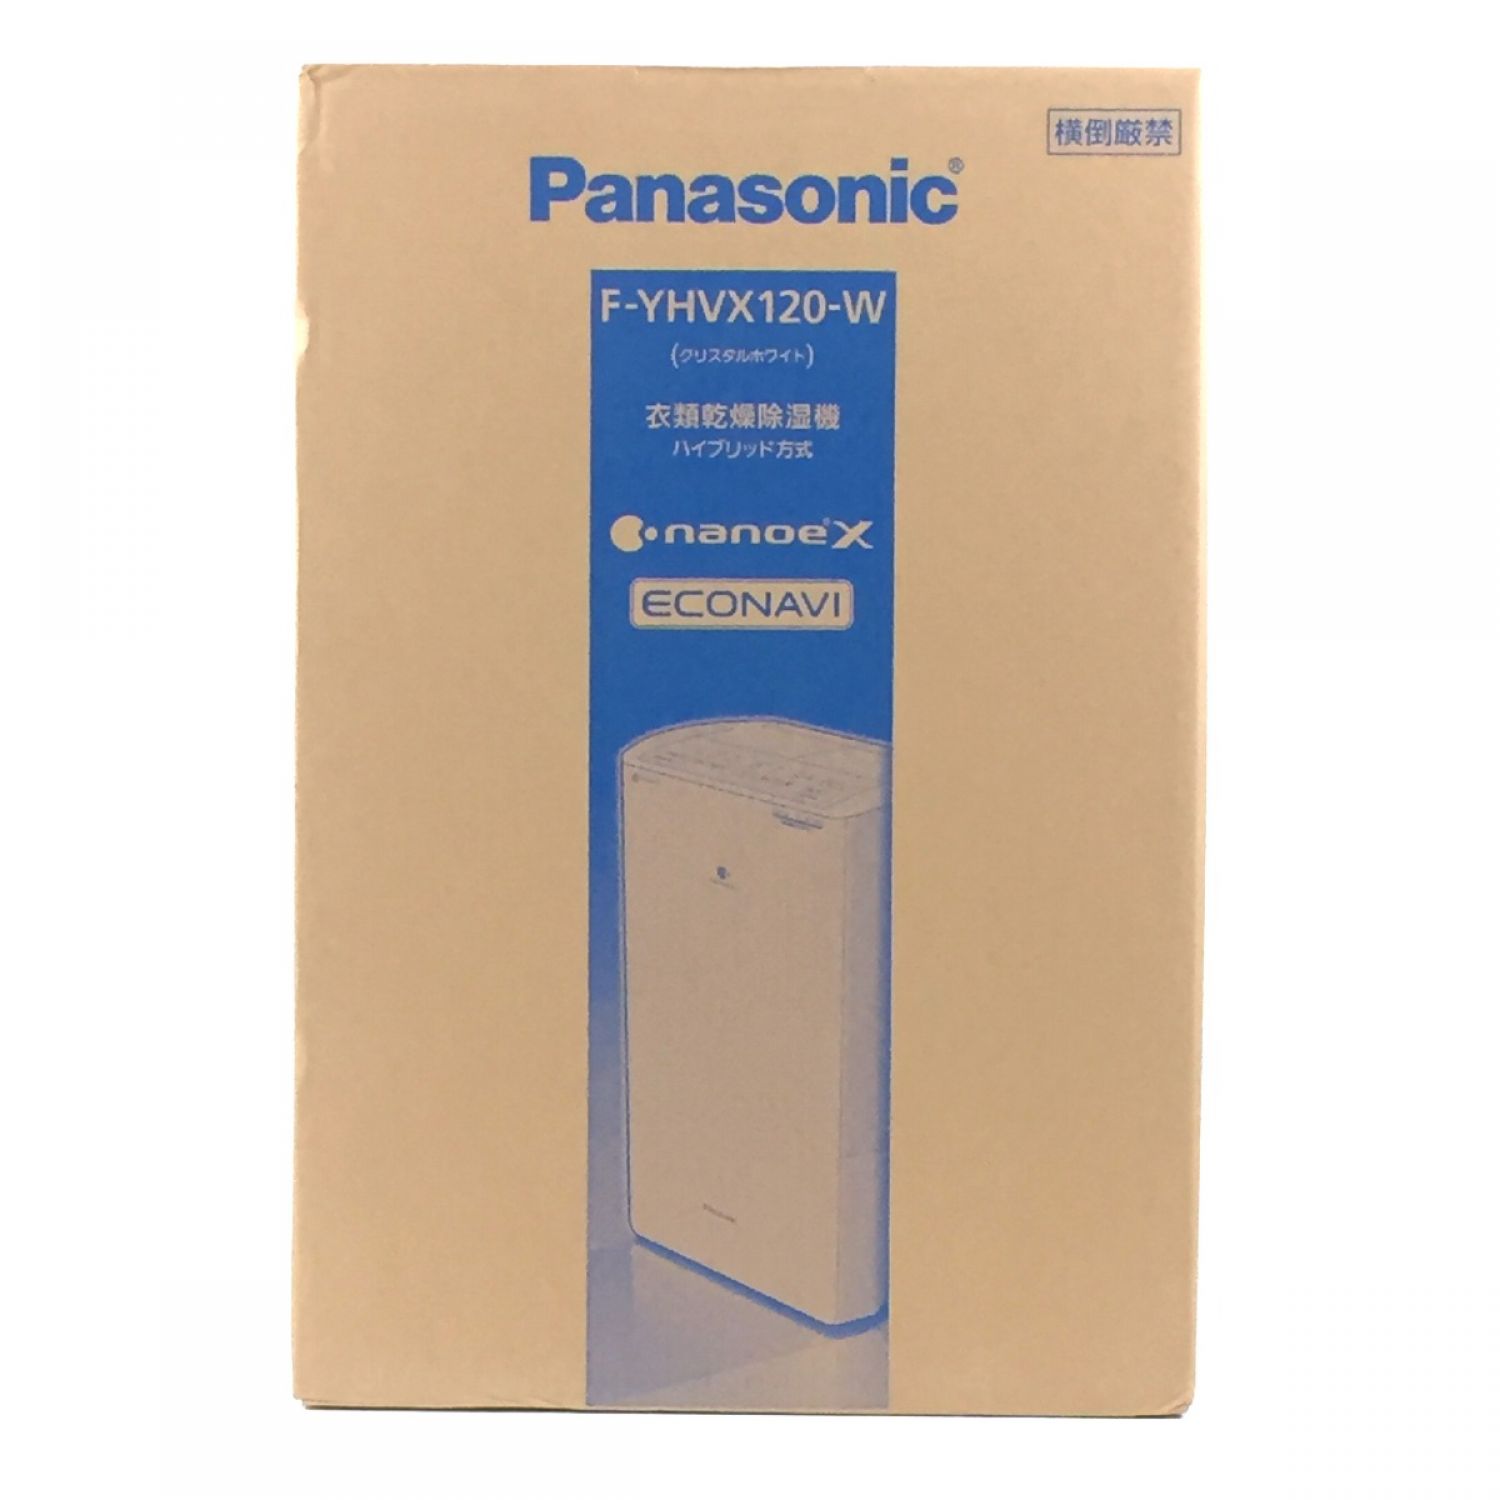 Panasonic 衣類乾燥除湿機 F-YHVX120 新品未使用